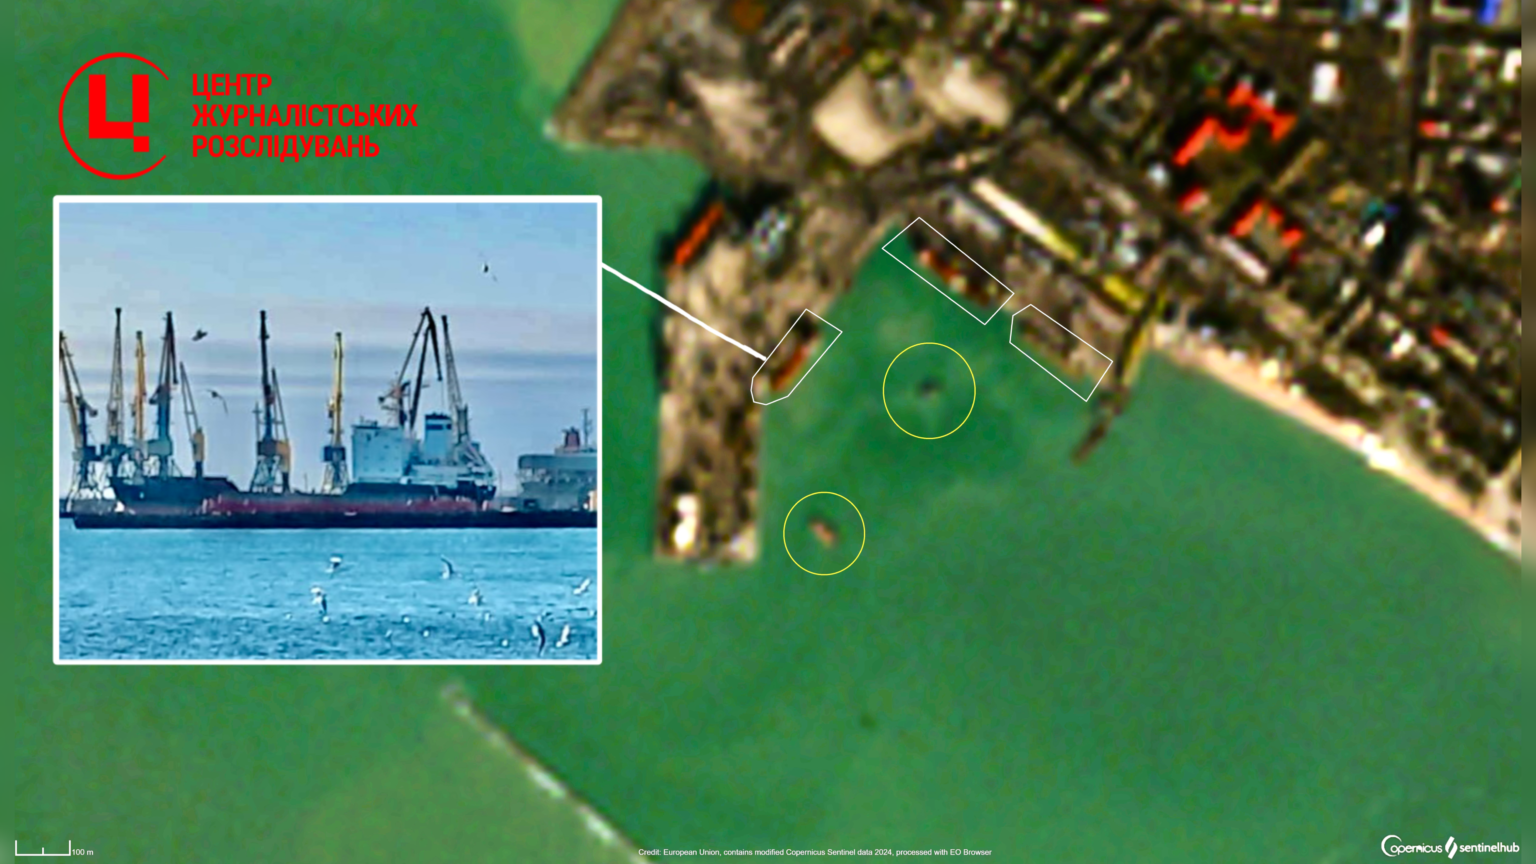 Також на супутниковому знімку в акваторії порту можна помітити ще два невідомих об’єкти.